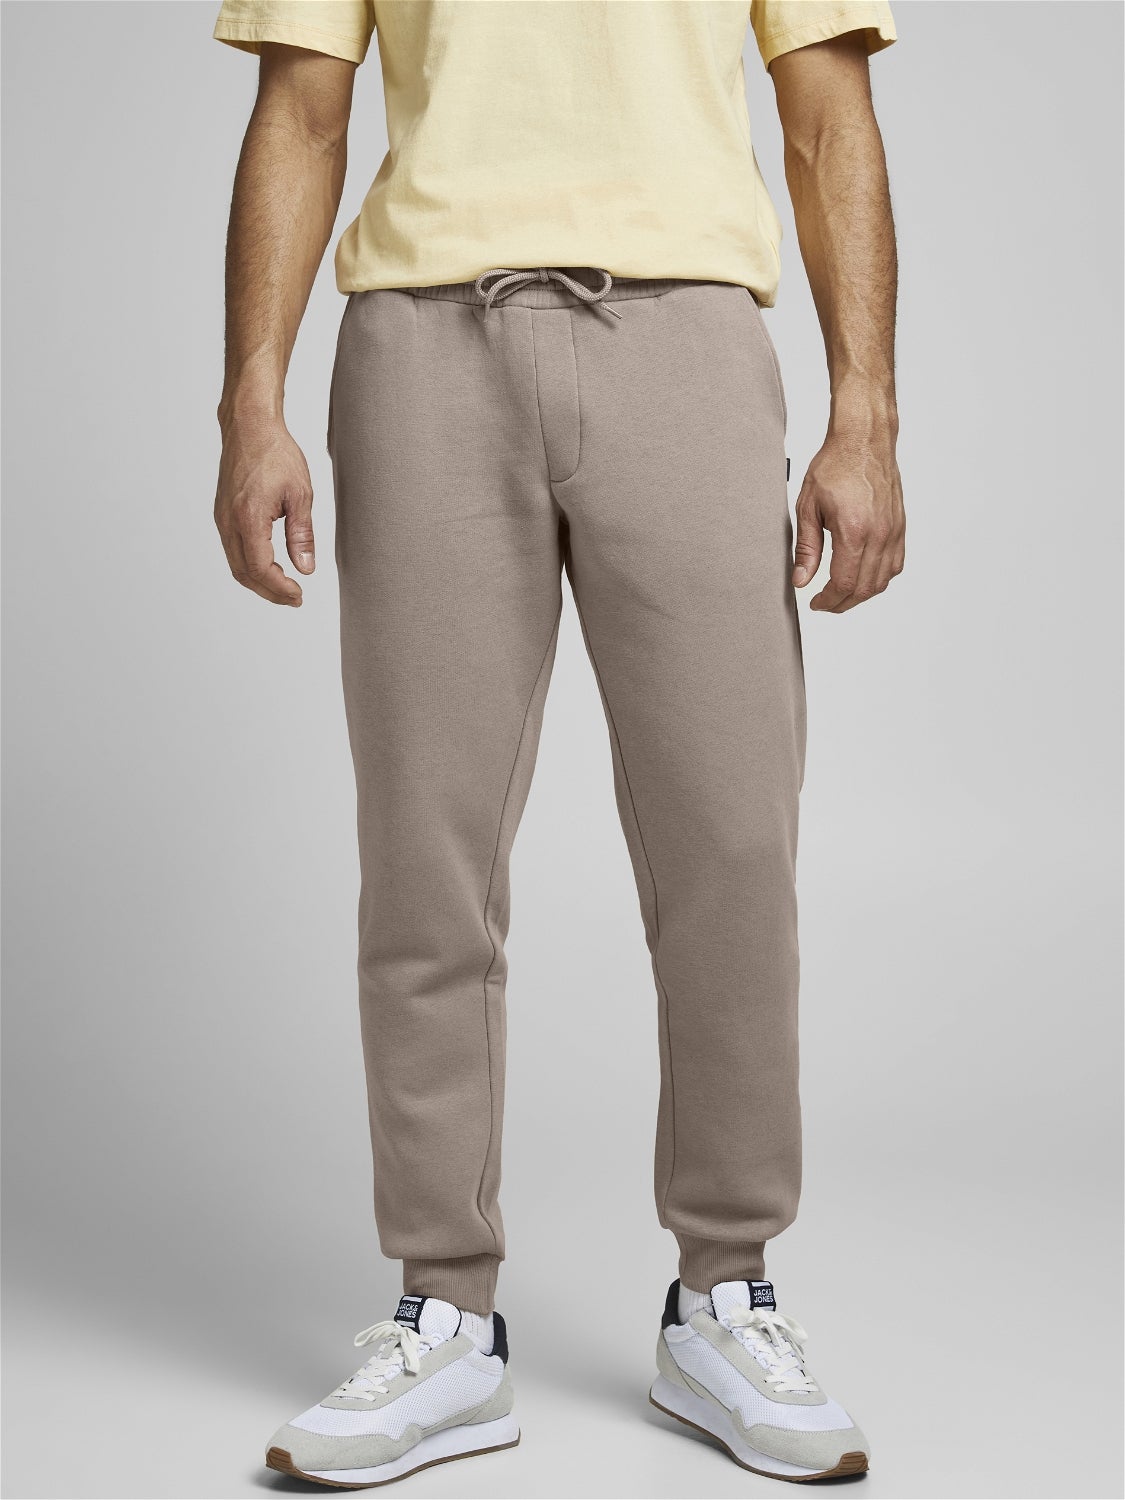 Homme Vêtements Pantalons décontractés Pantalon de jogging à coupe droite Synthétique Y-3 pour homme en coloris Noir élégants et chinos Pantalons casual 